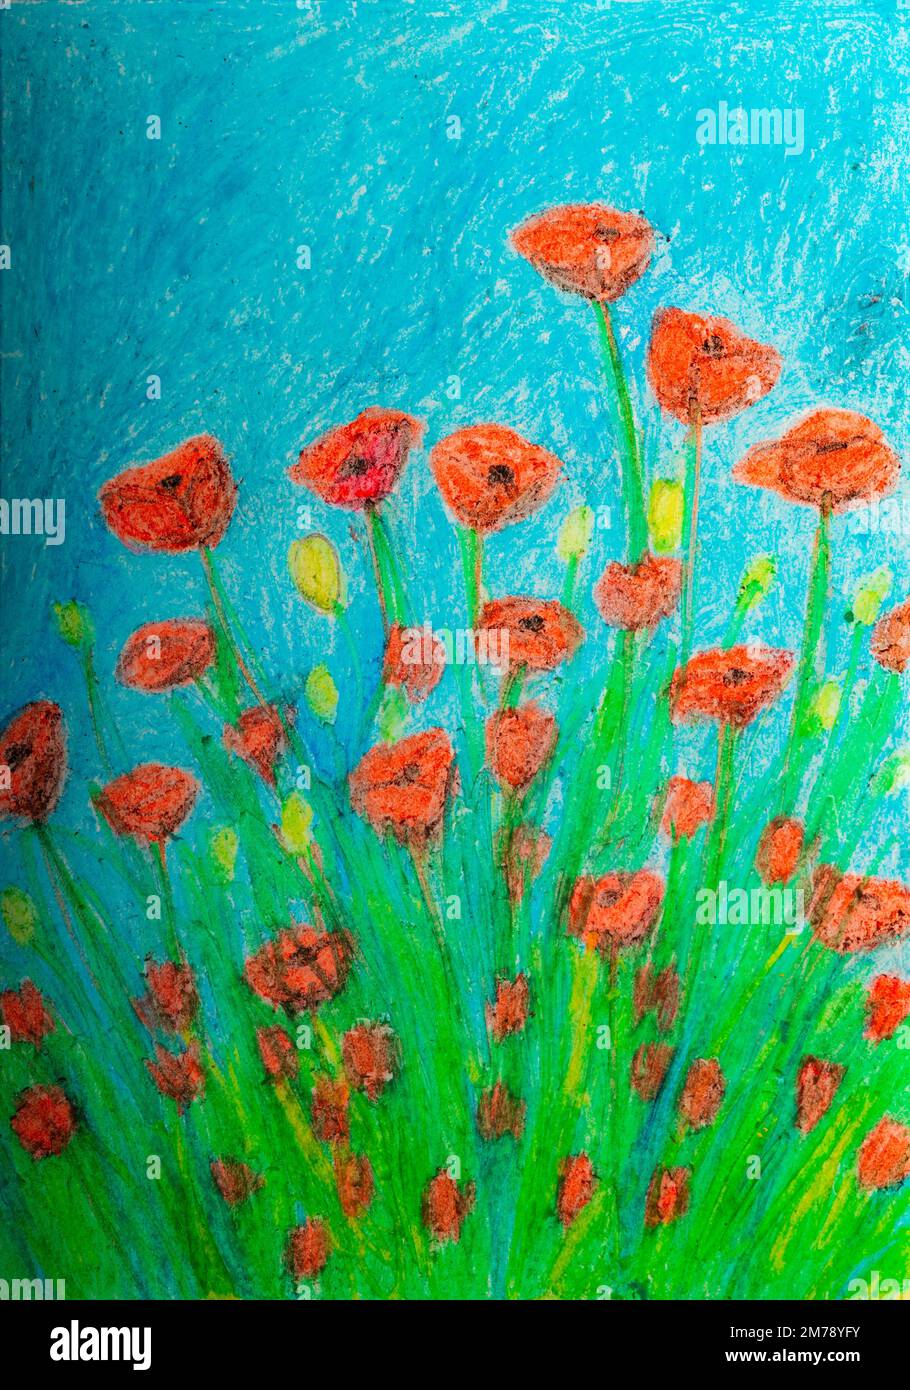 California Red Poppy Flowers, Ölgemälde in Pastelltönen. Stockfoto